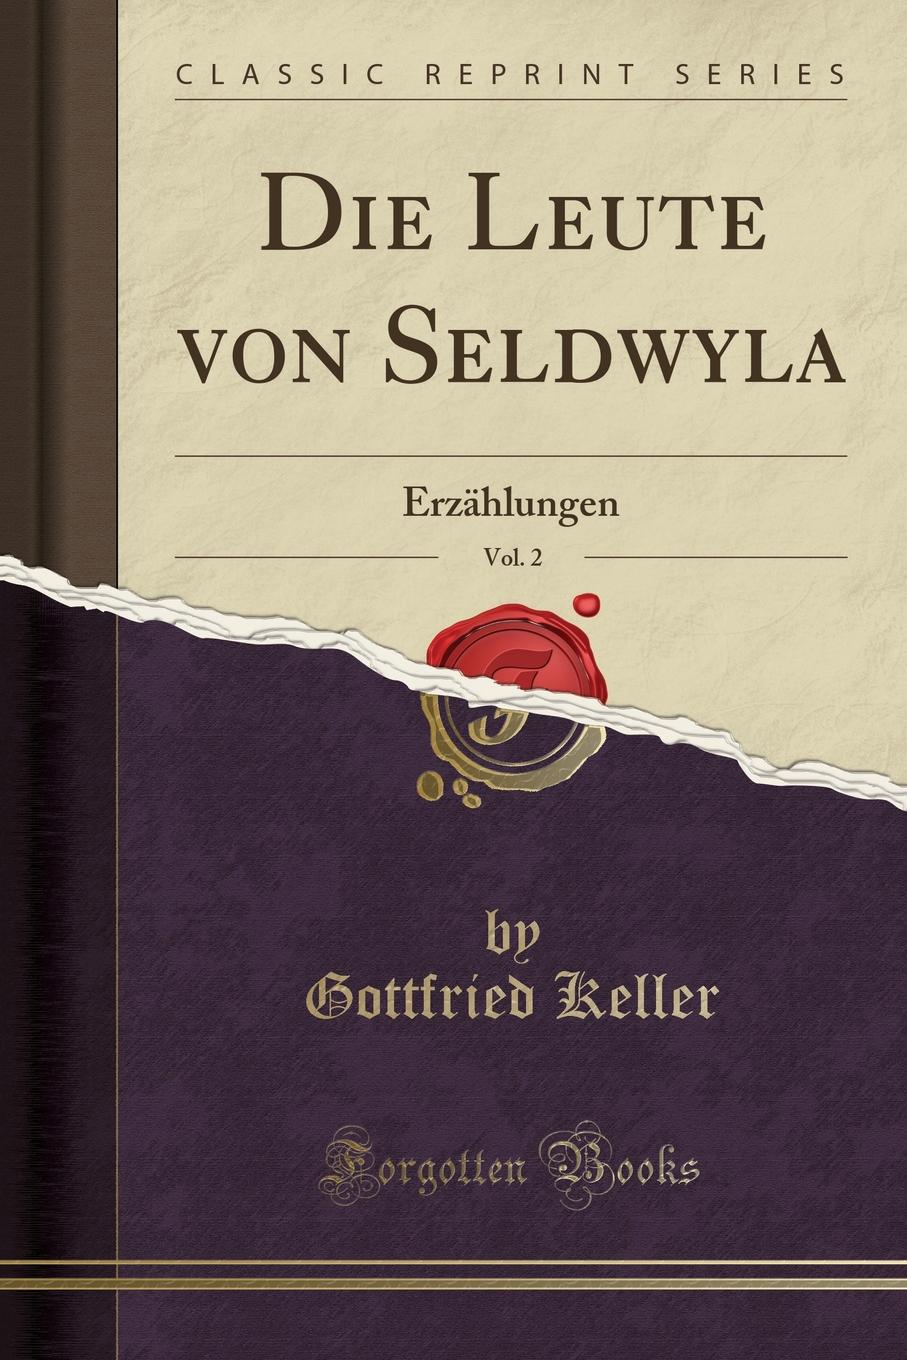 Die Leute von Seldwyla, Vol. 2. Erzahlungen (Classic Reprint)